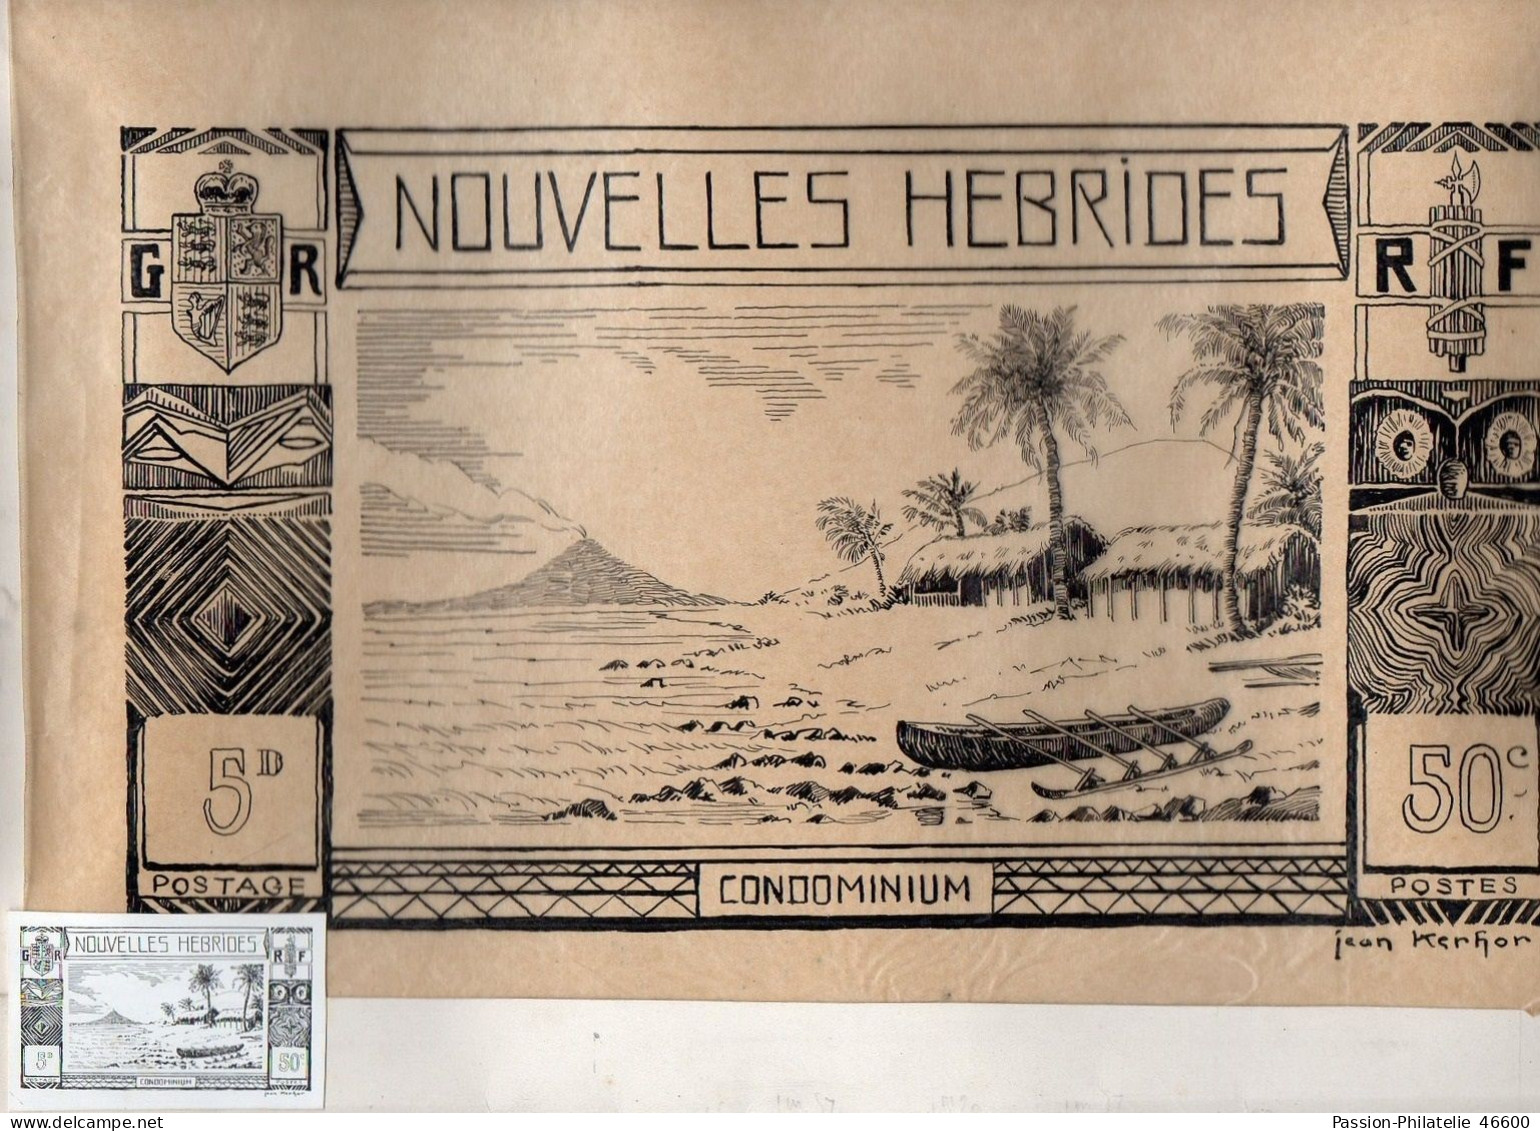 NOUVELLES HEBRIDES, MAQUETTE D'UN TIMBRE NON EMIS DESSINEE PAR JEAN KERHOR - Unused Stamps